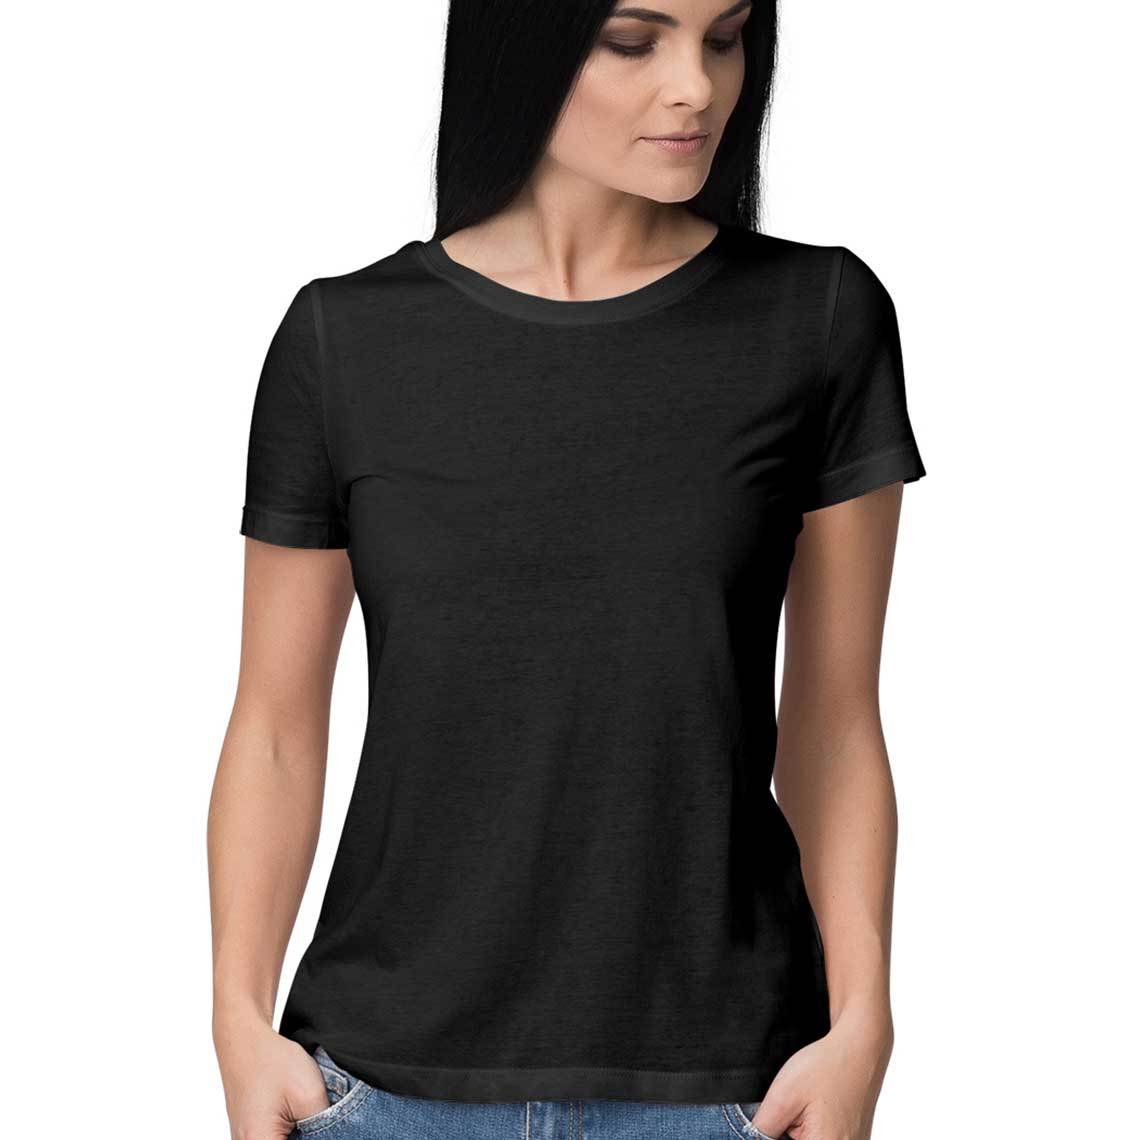 Women's Plain Solid T-Shirt Running4Ever